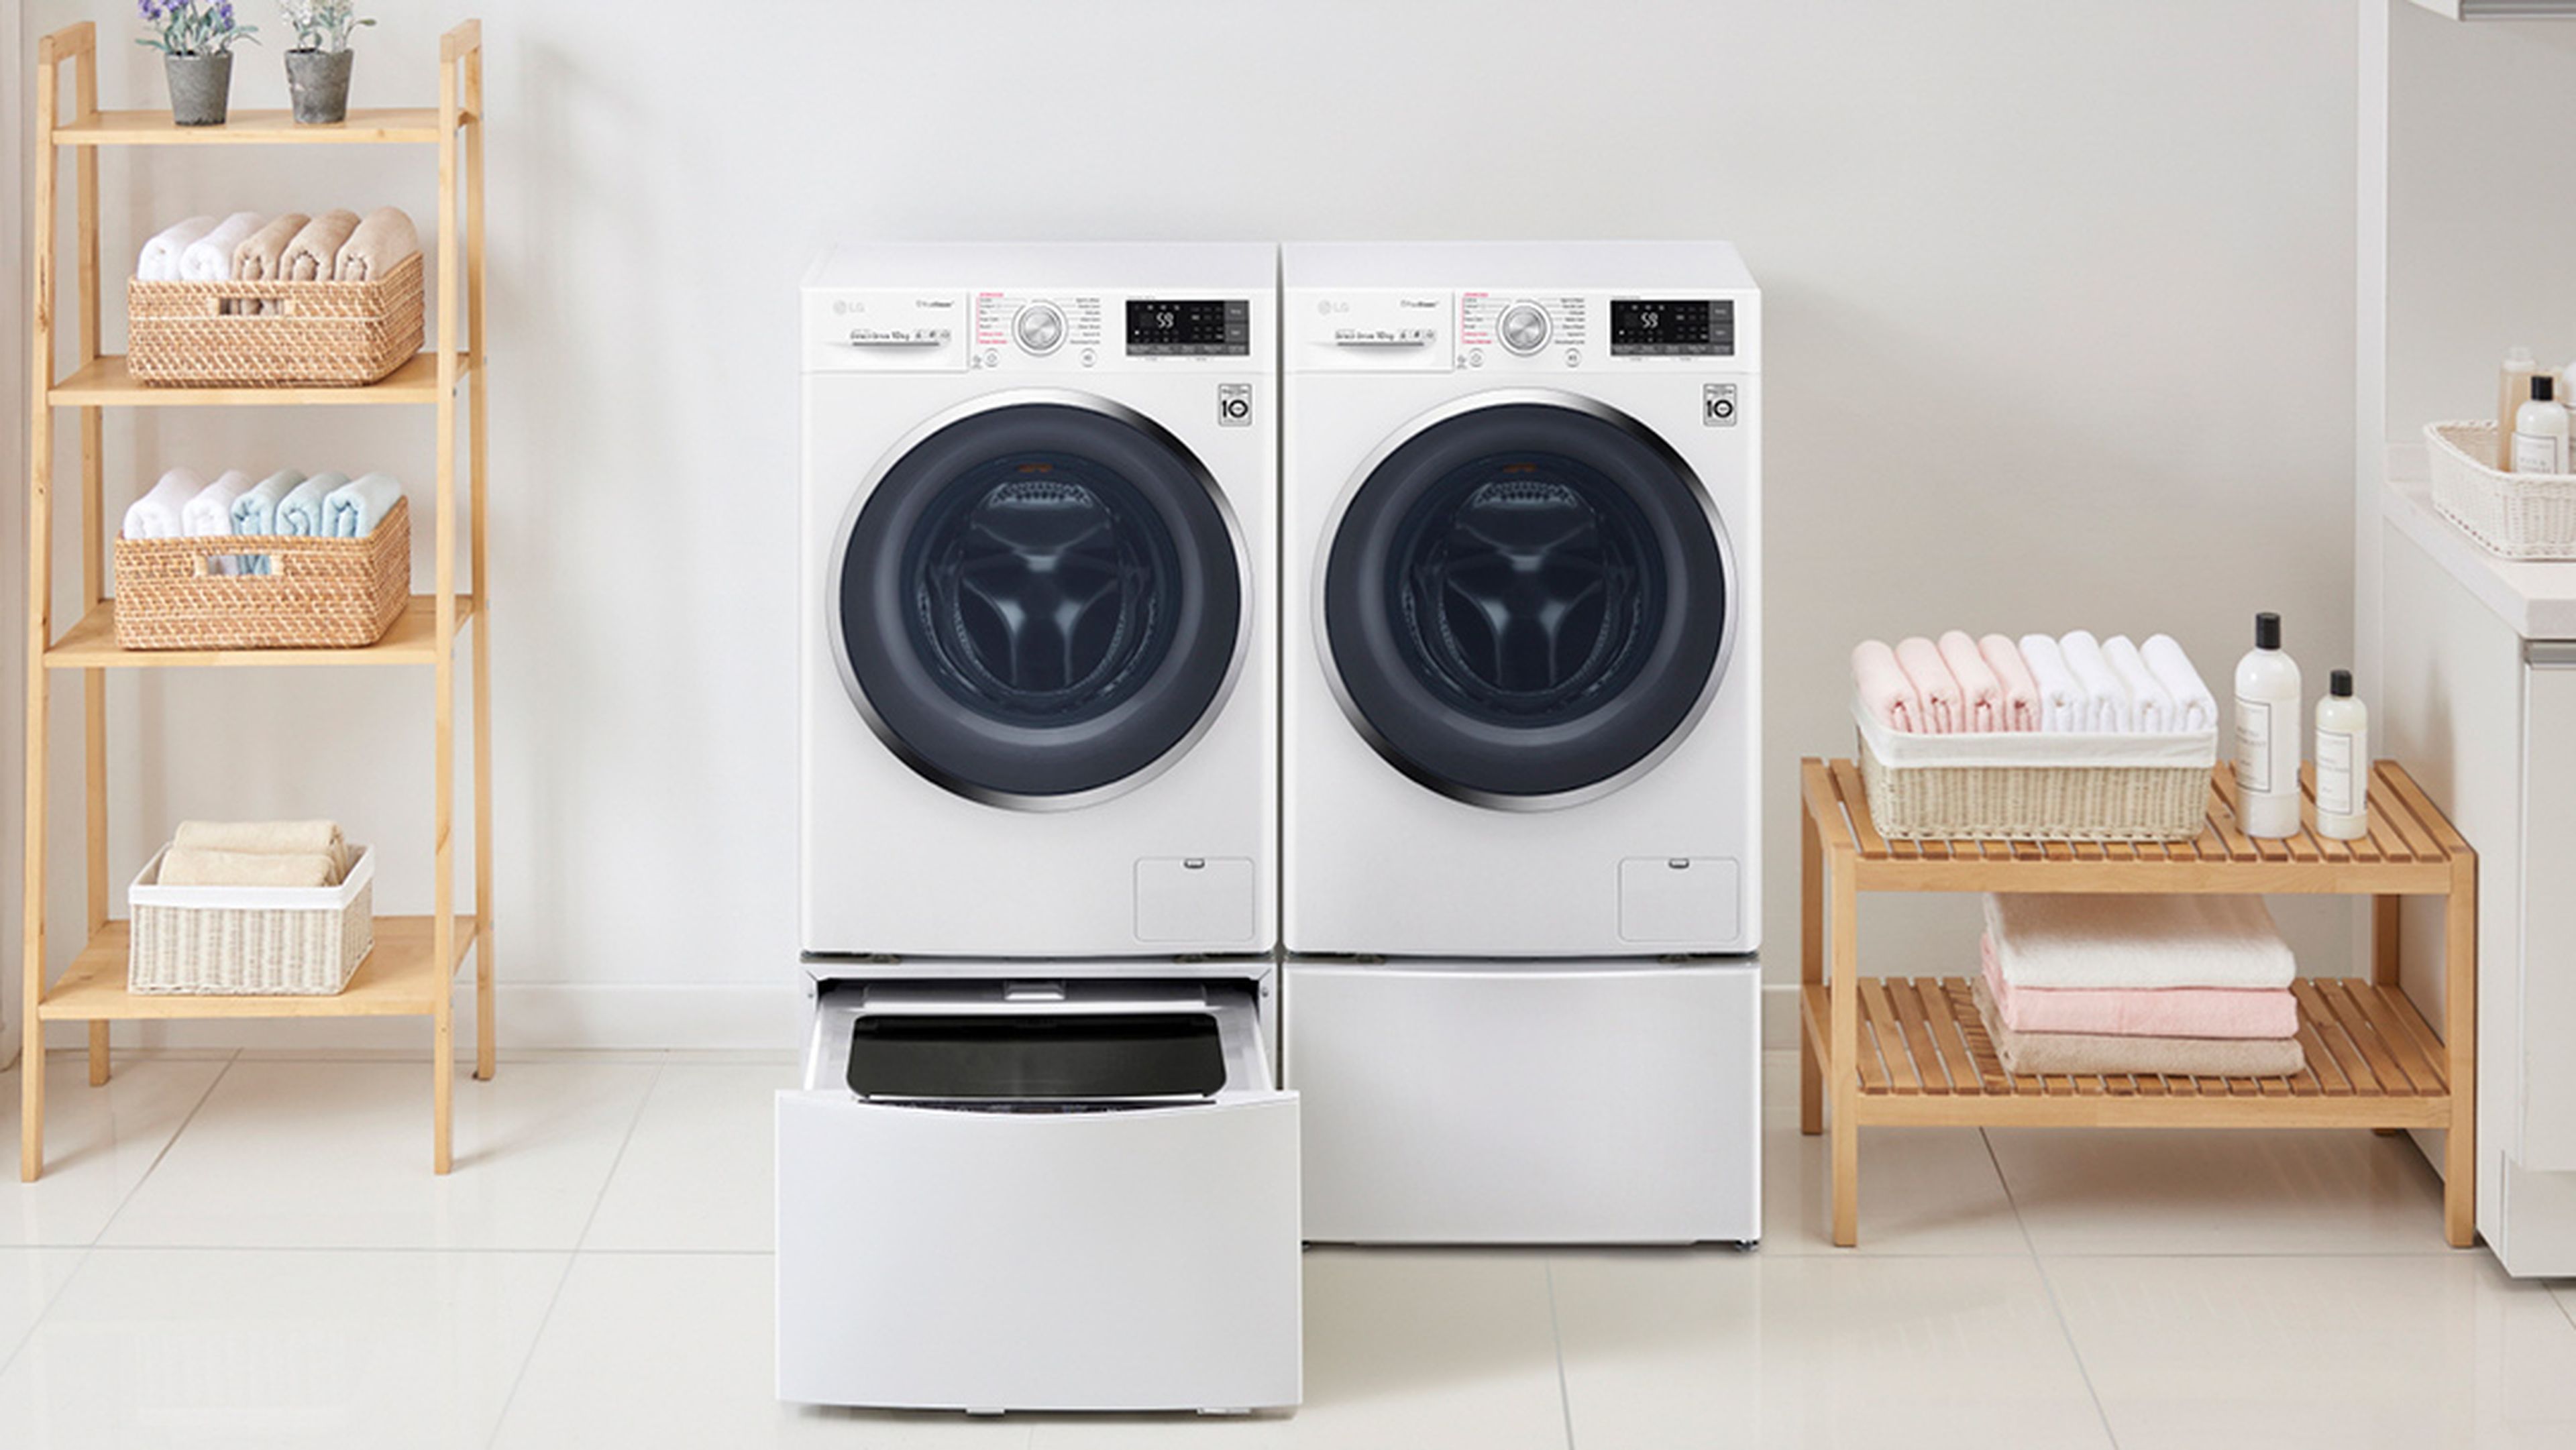 Patrocinar Aditivo Arábica Las lavadoras ecoeficientes de LG ahorran y cuidan el medioambiente |  Computer Hoy